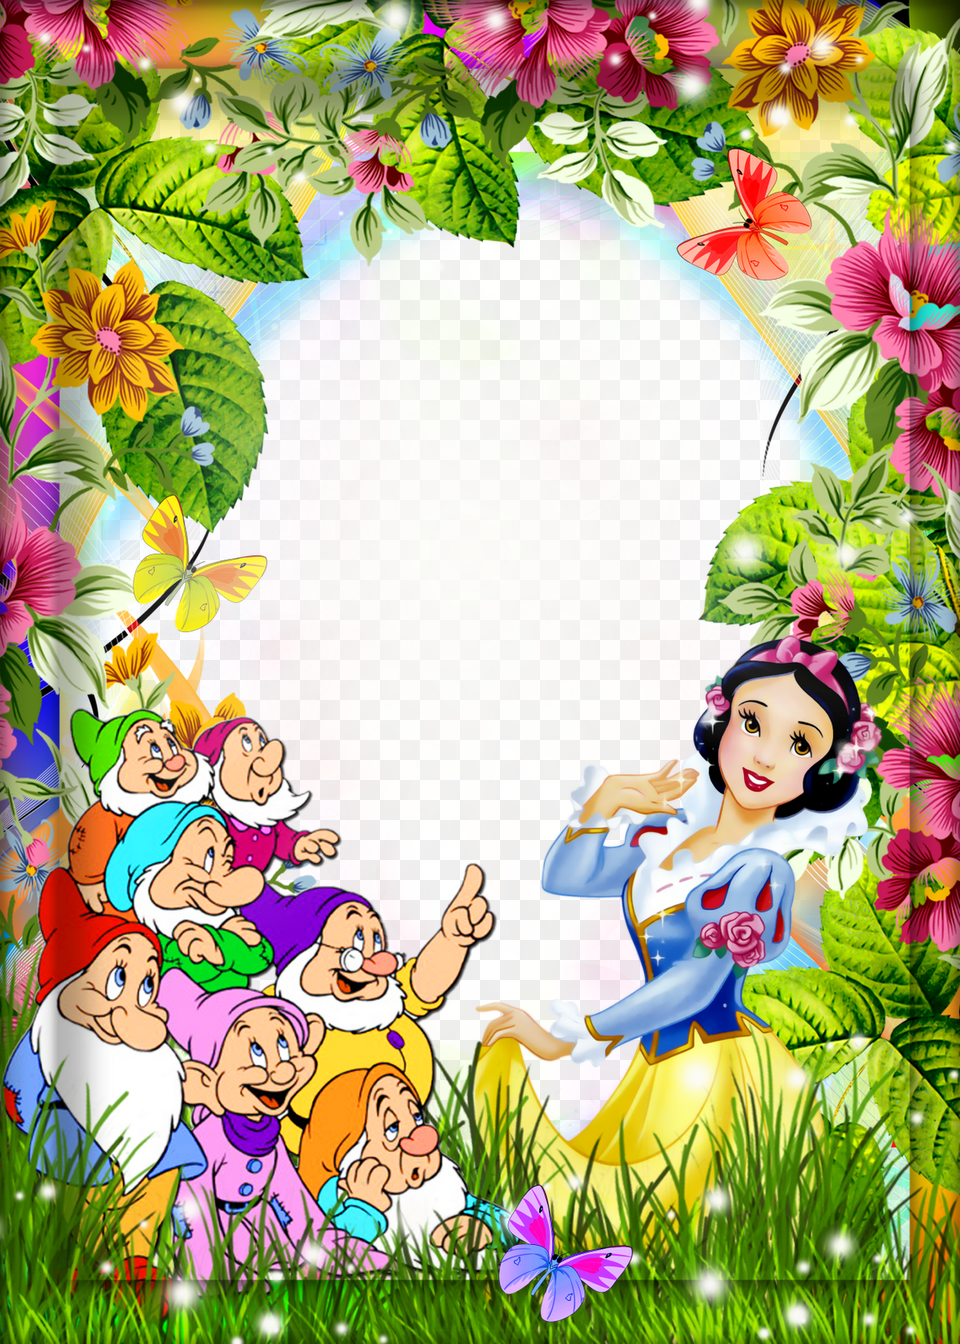 Snow White Border Clipart Snow White Seven Dwarfs Picture, Publication, Book, Comics, Graphics Png